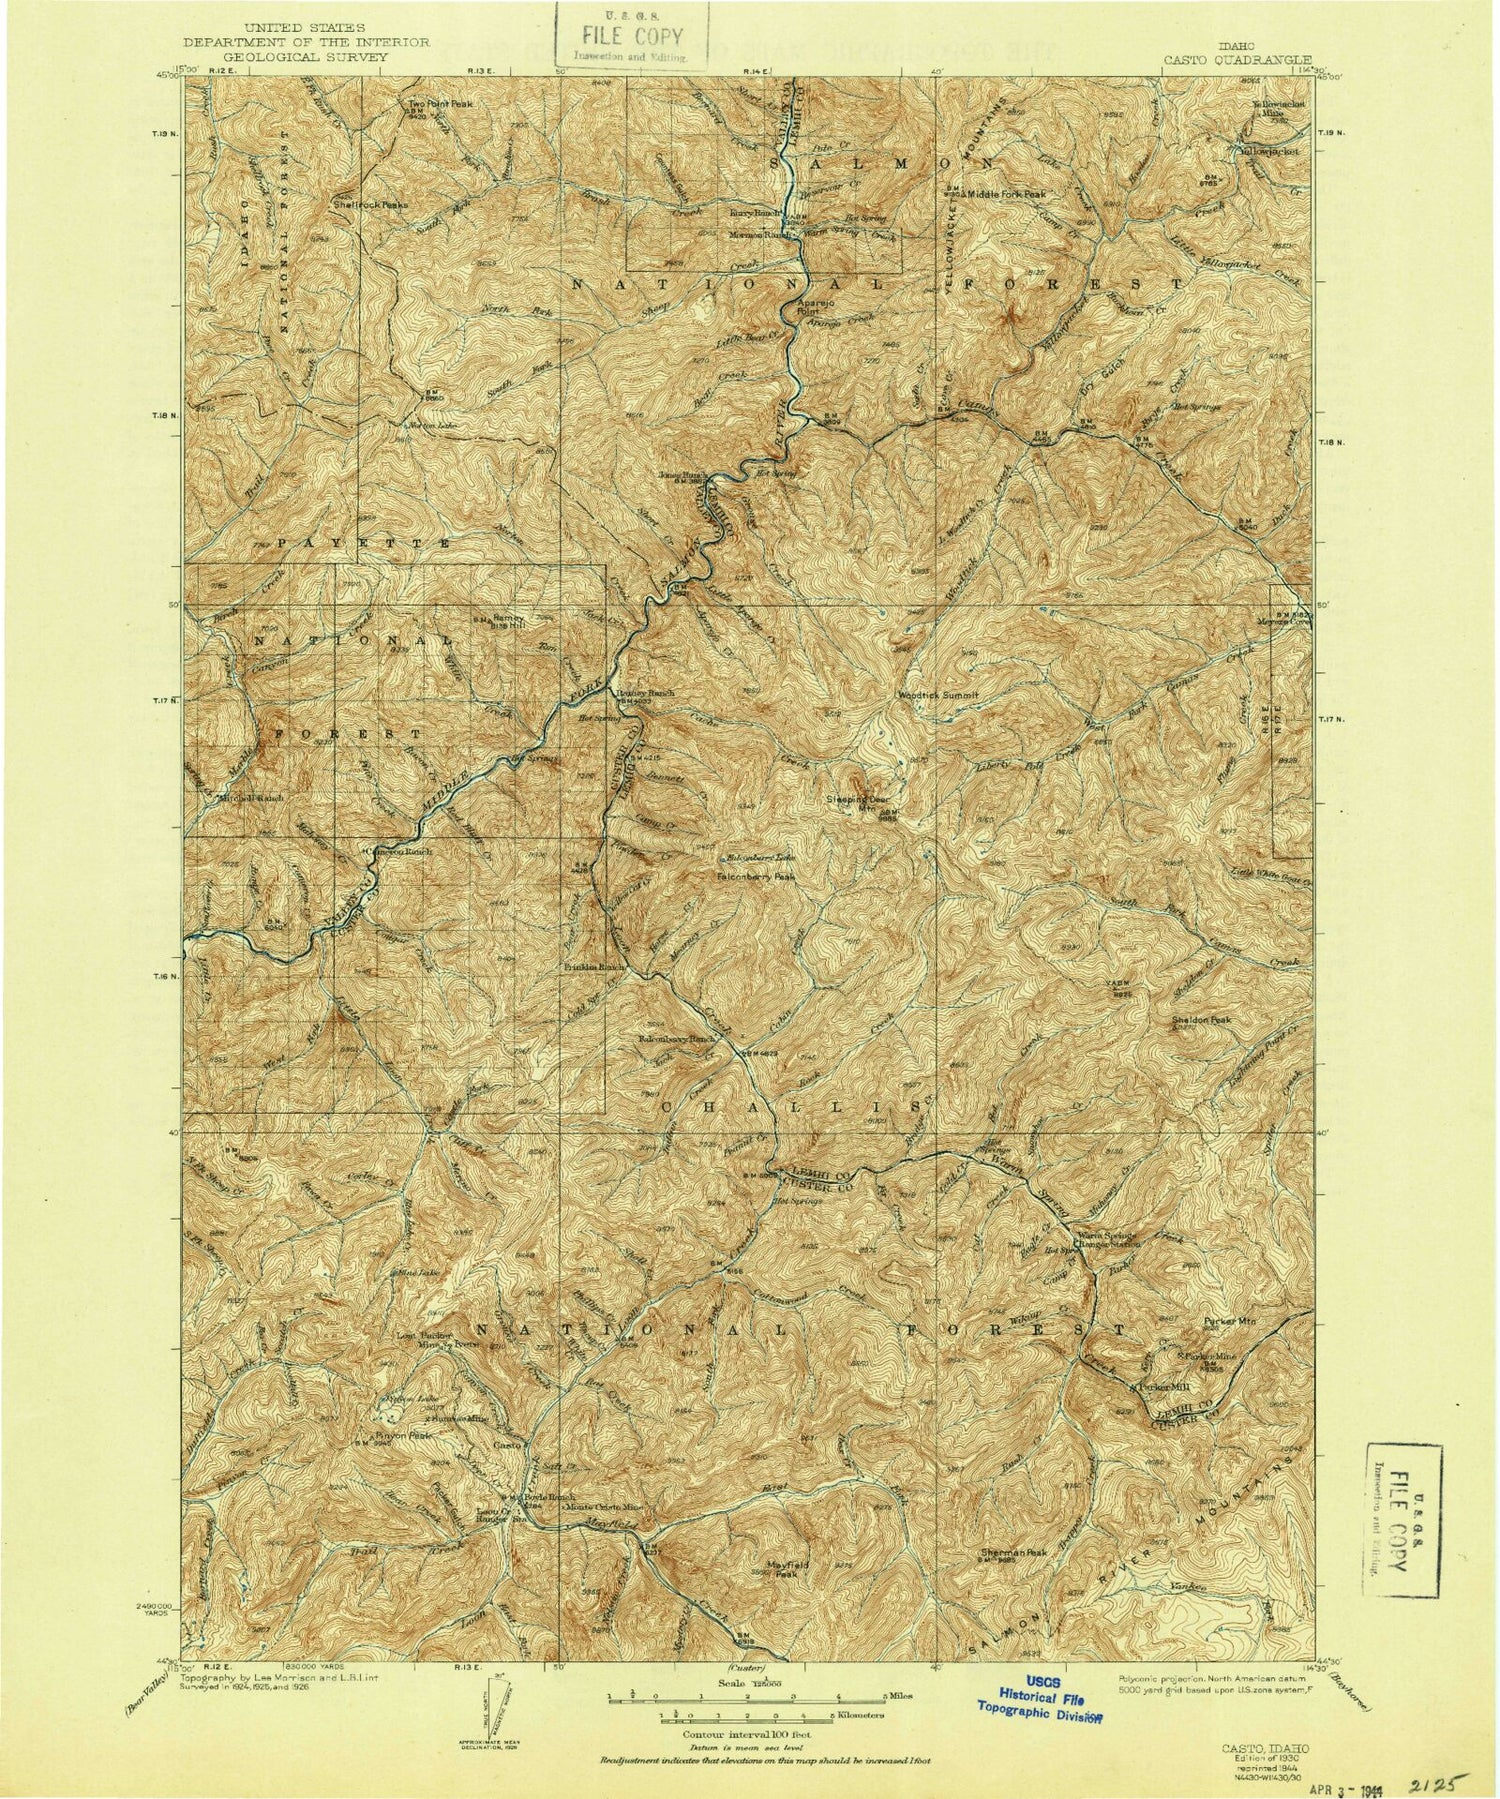 Historic 1930 Casto Idaho 30'x30' Topo Map Image